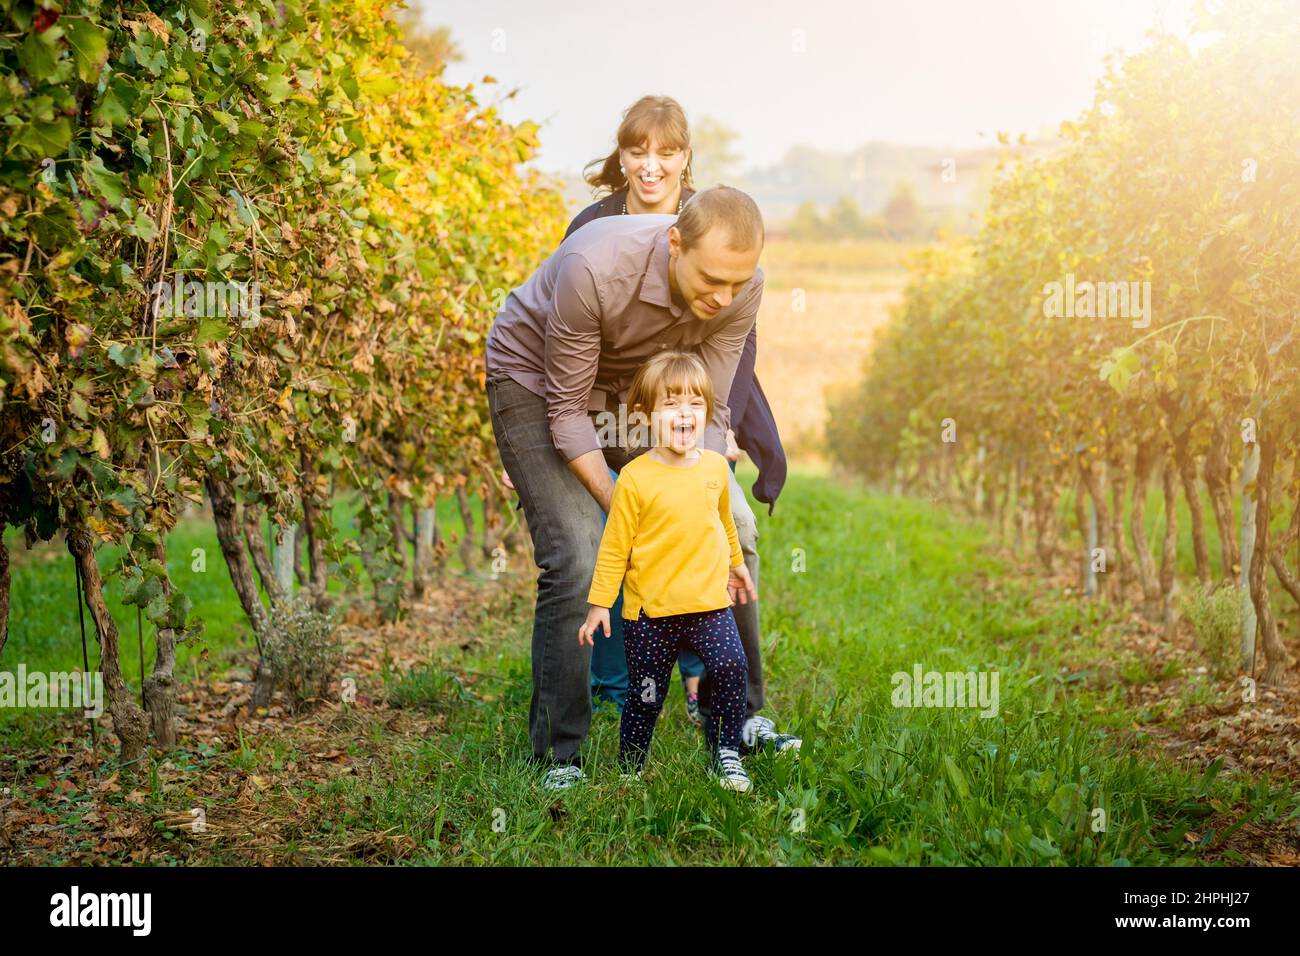 Belle jeune famille souriante de trois personnes s'amusant, plaisantant et marchant ensemble dans un vignoble Banque D'Images